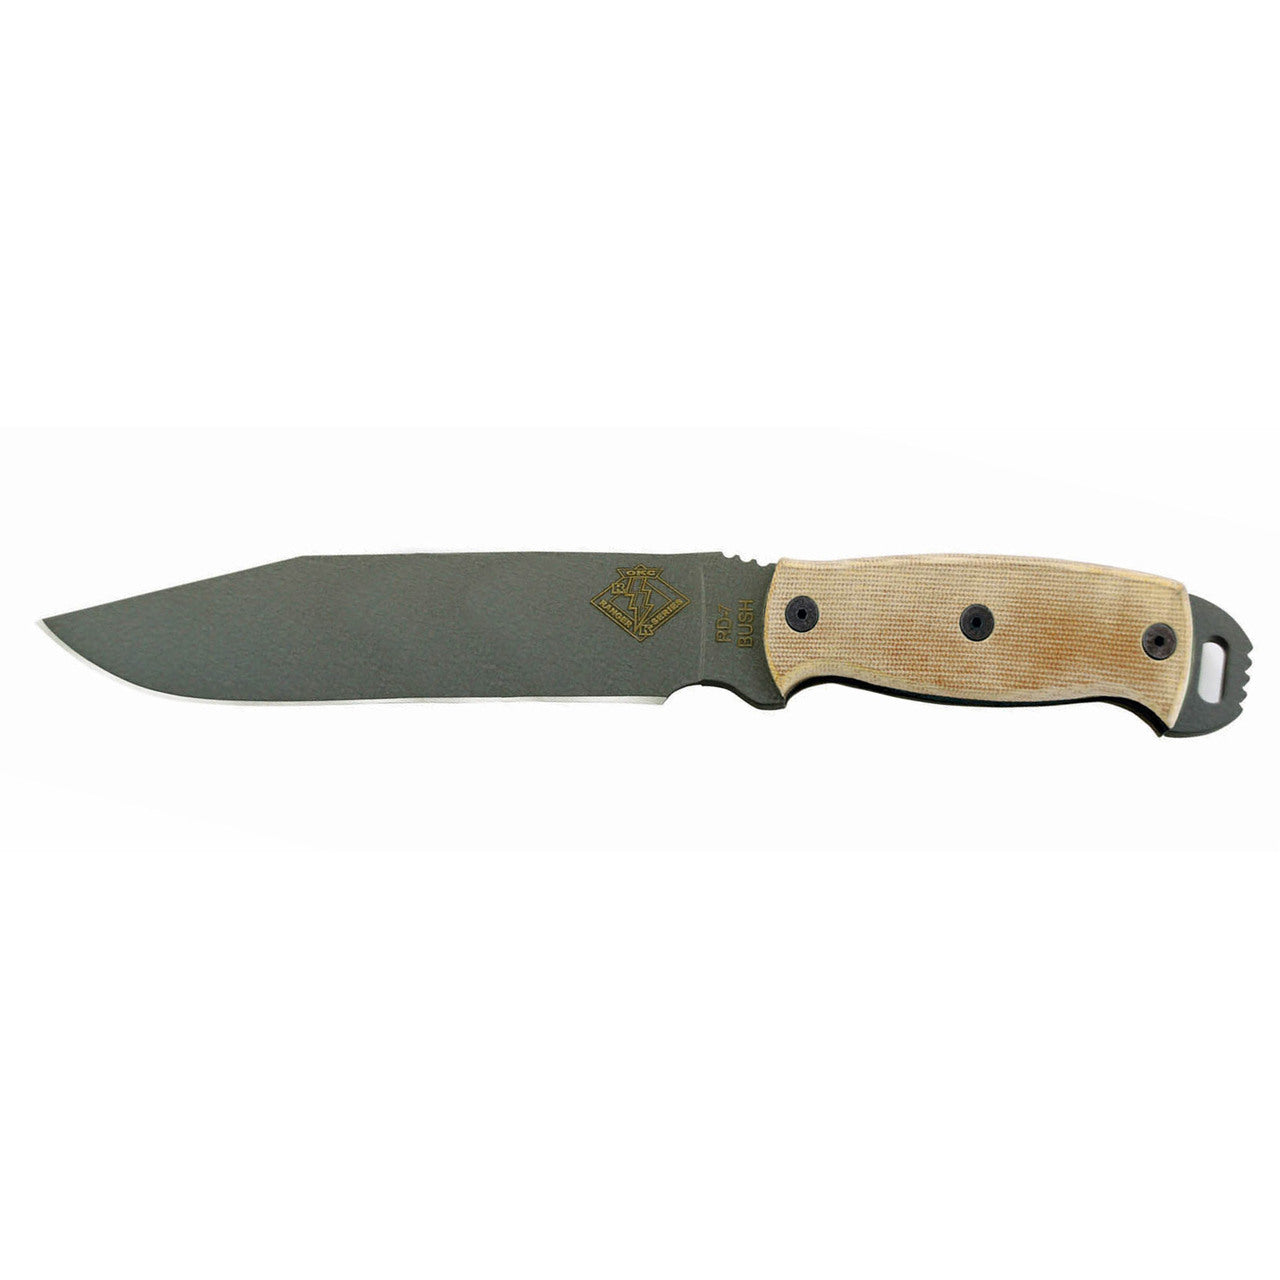 Ranger Bush Series, RBS-7 Knife